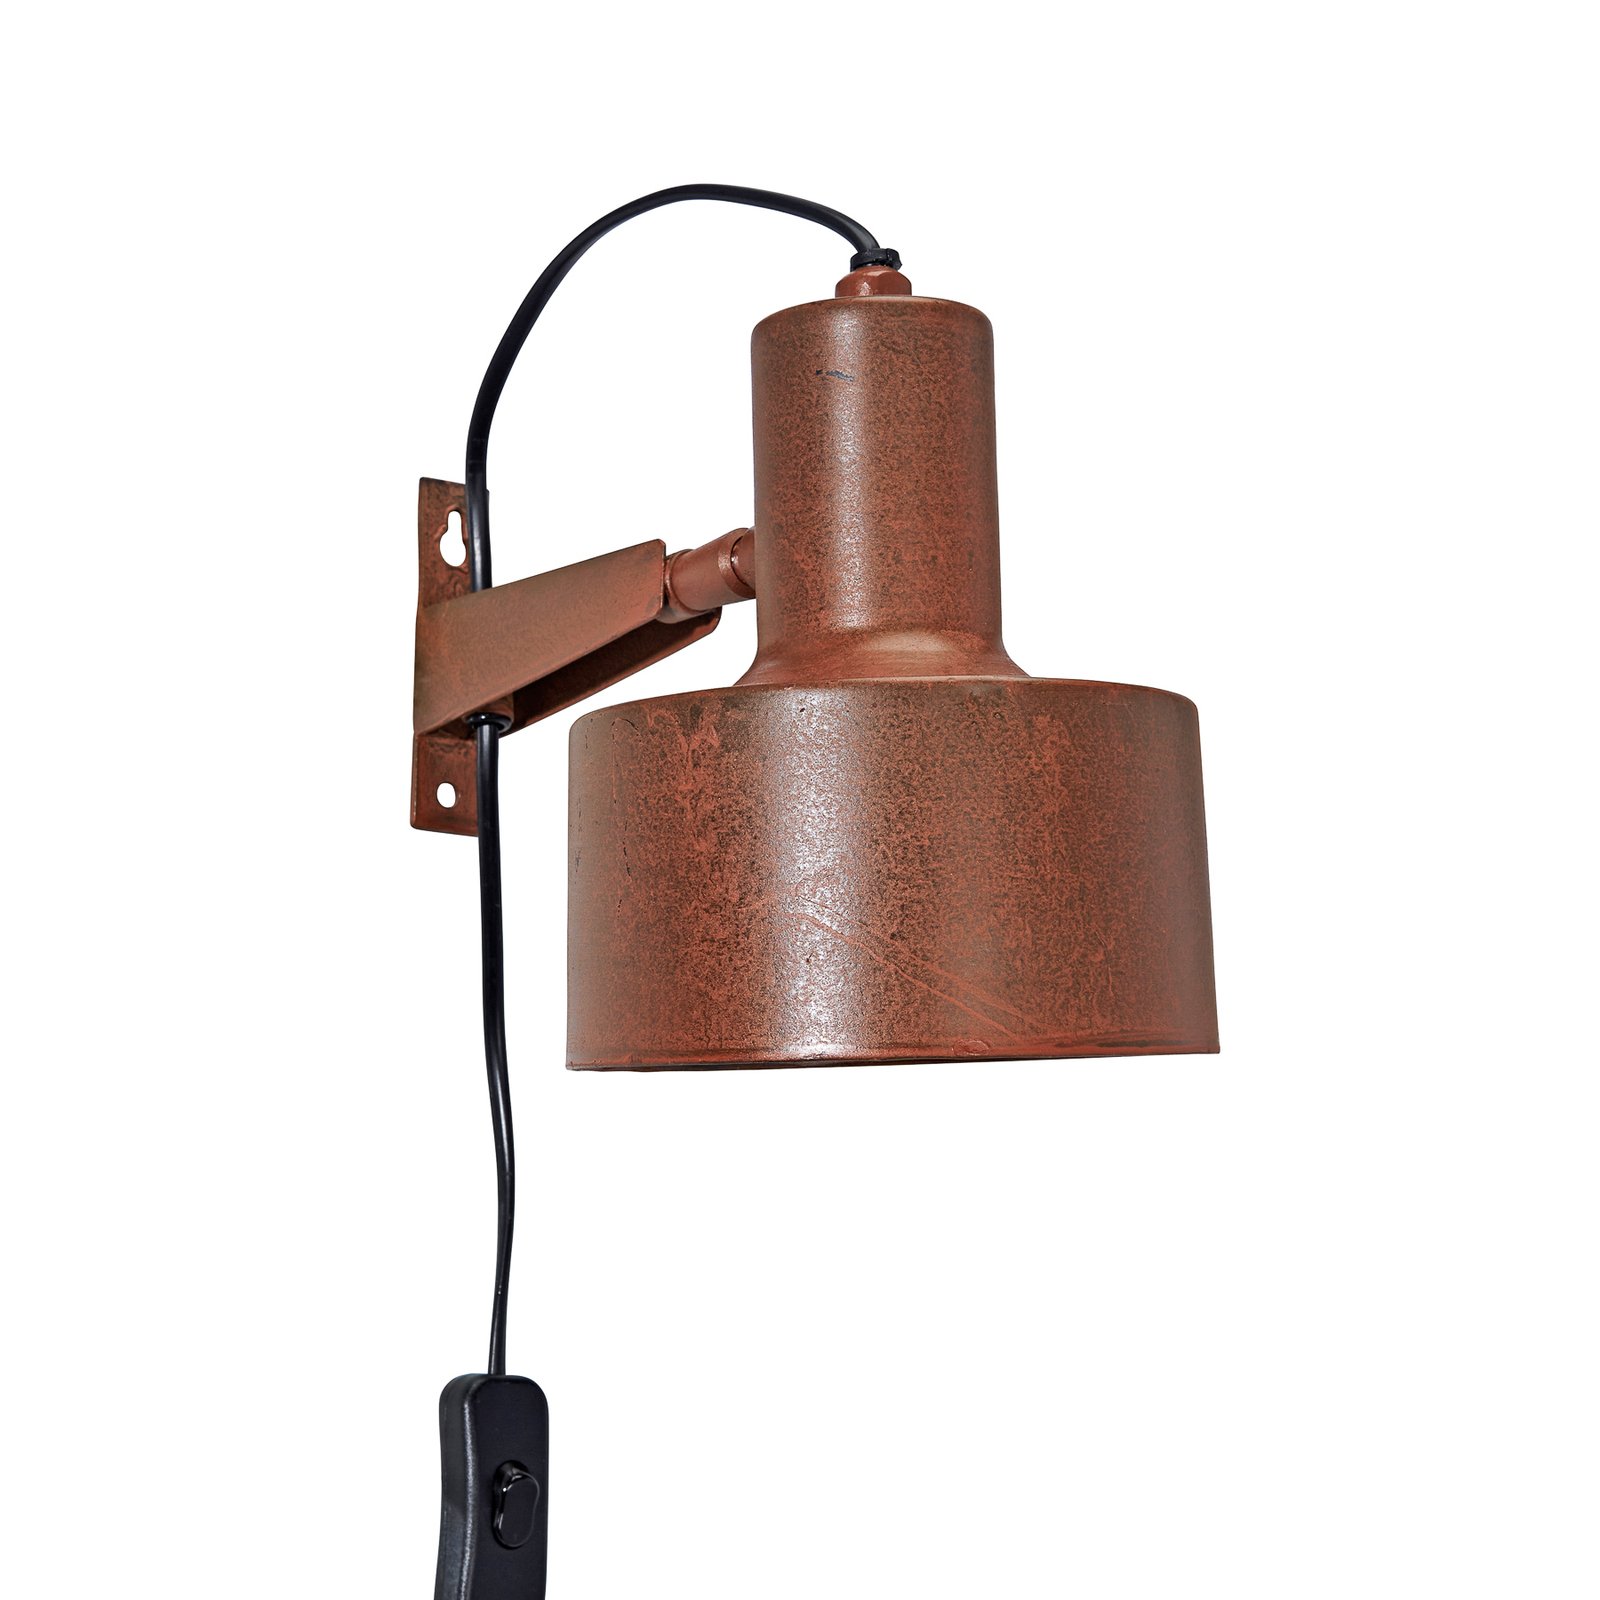 PR Home Solo wandlamp met stekker, roest